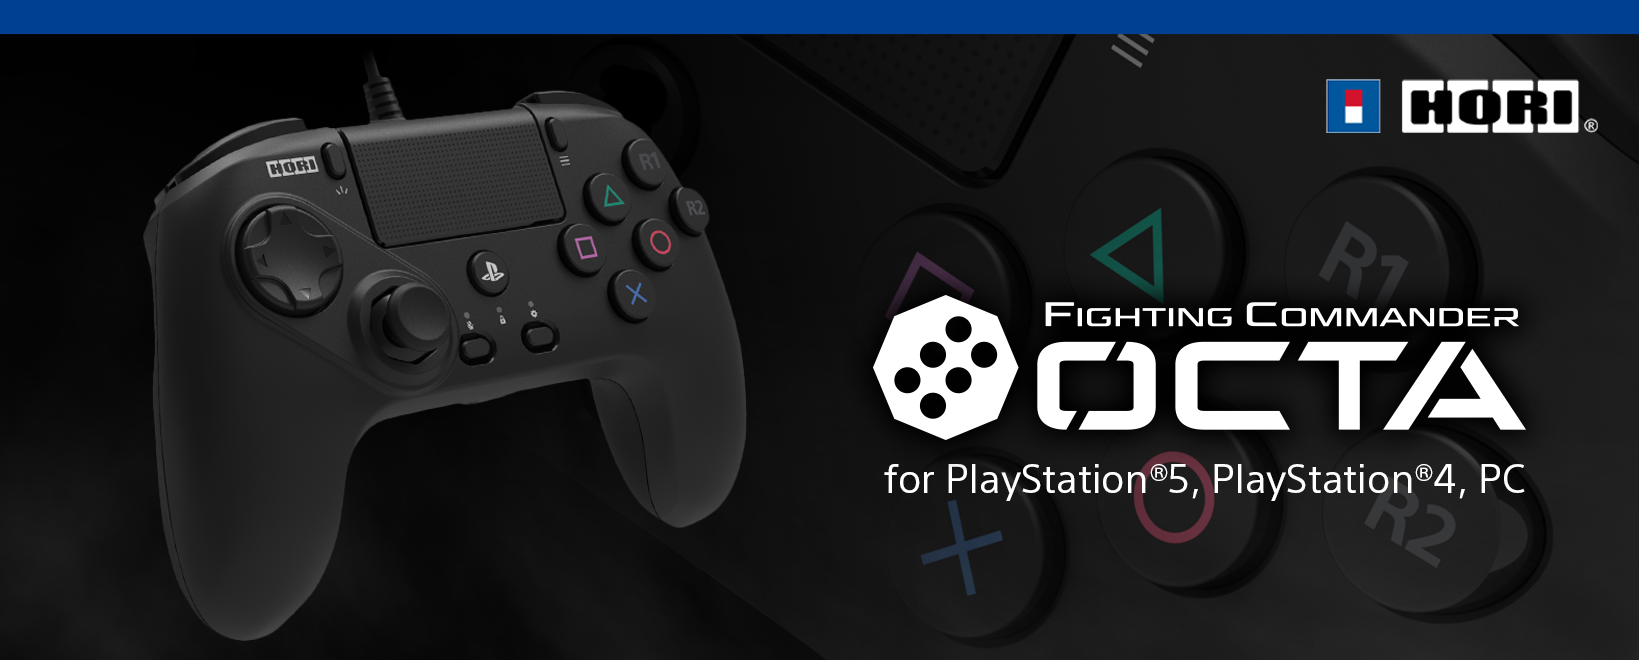 株式会社 HORI | ファイティングコマンダー OCTA for PlayStation®5 